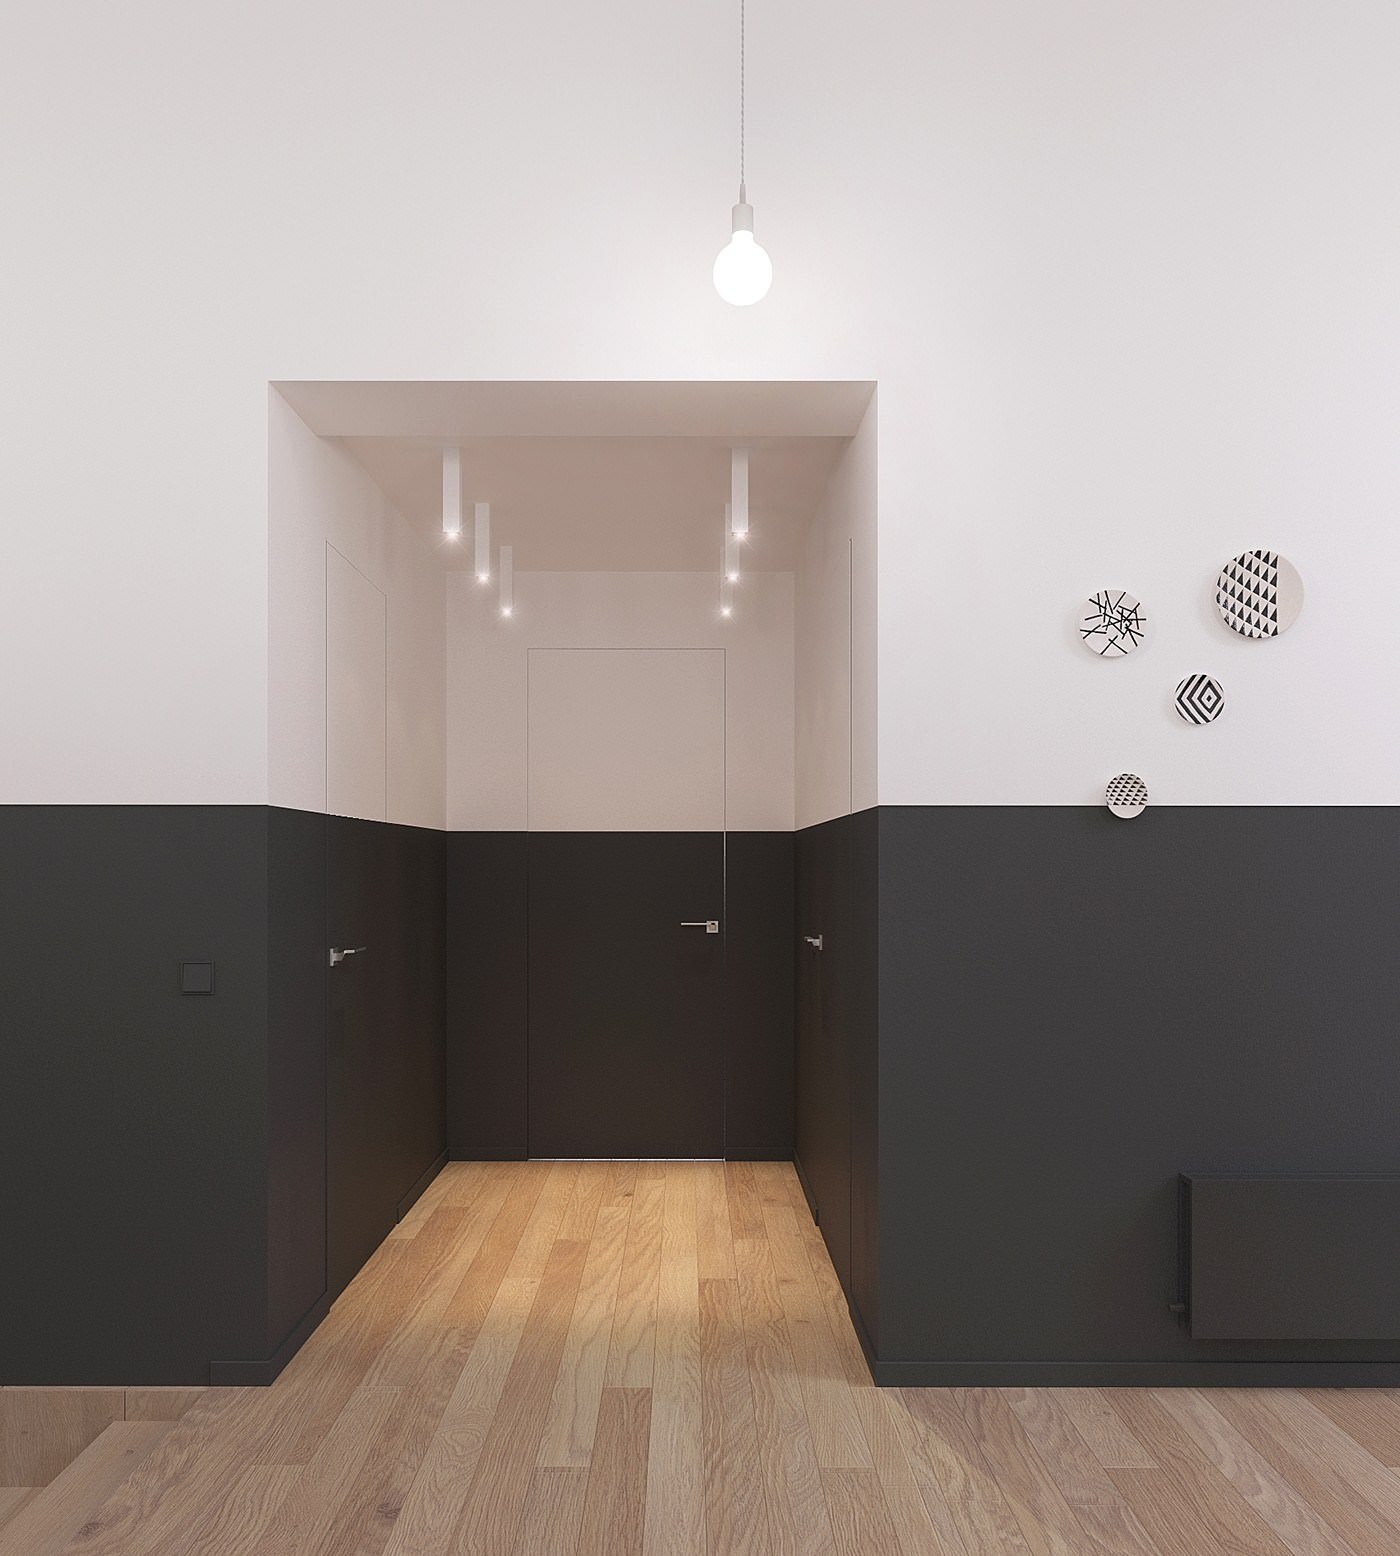 Porta verniciata in bianco e nero - interno appartamento stile nordico